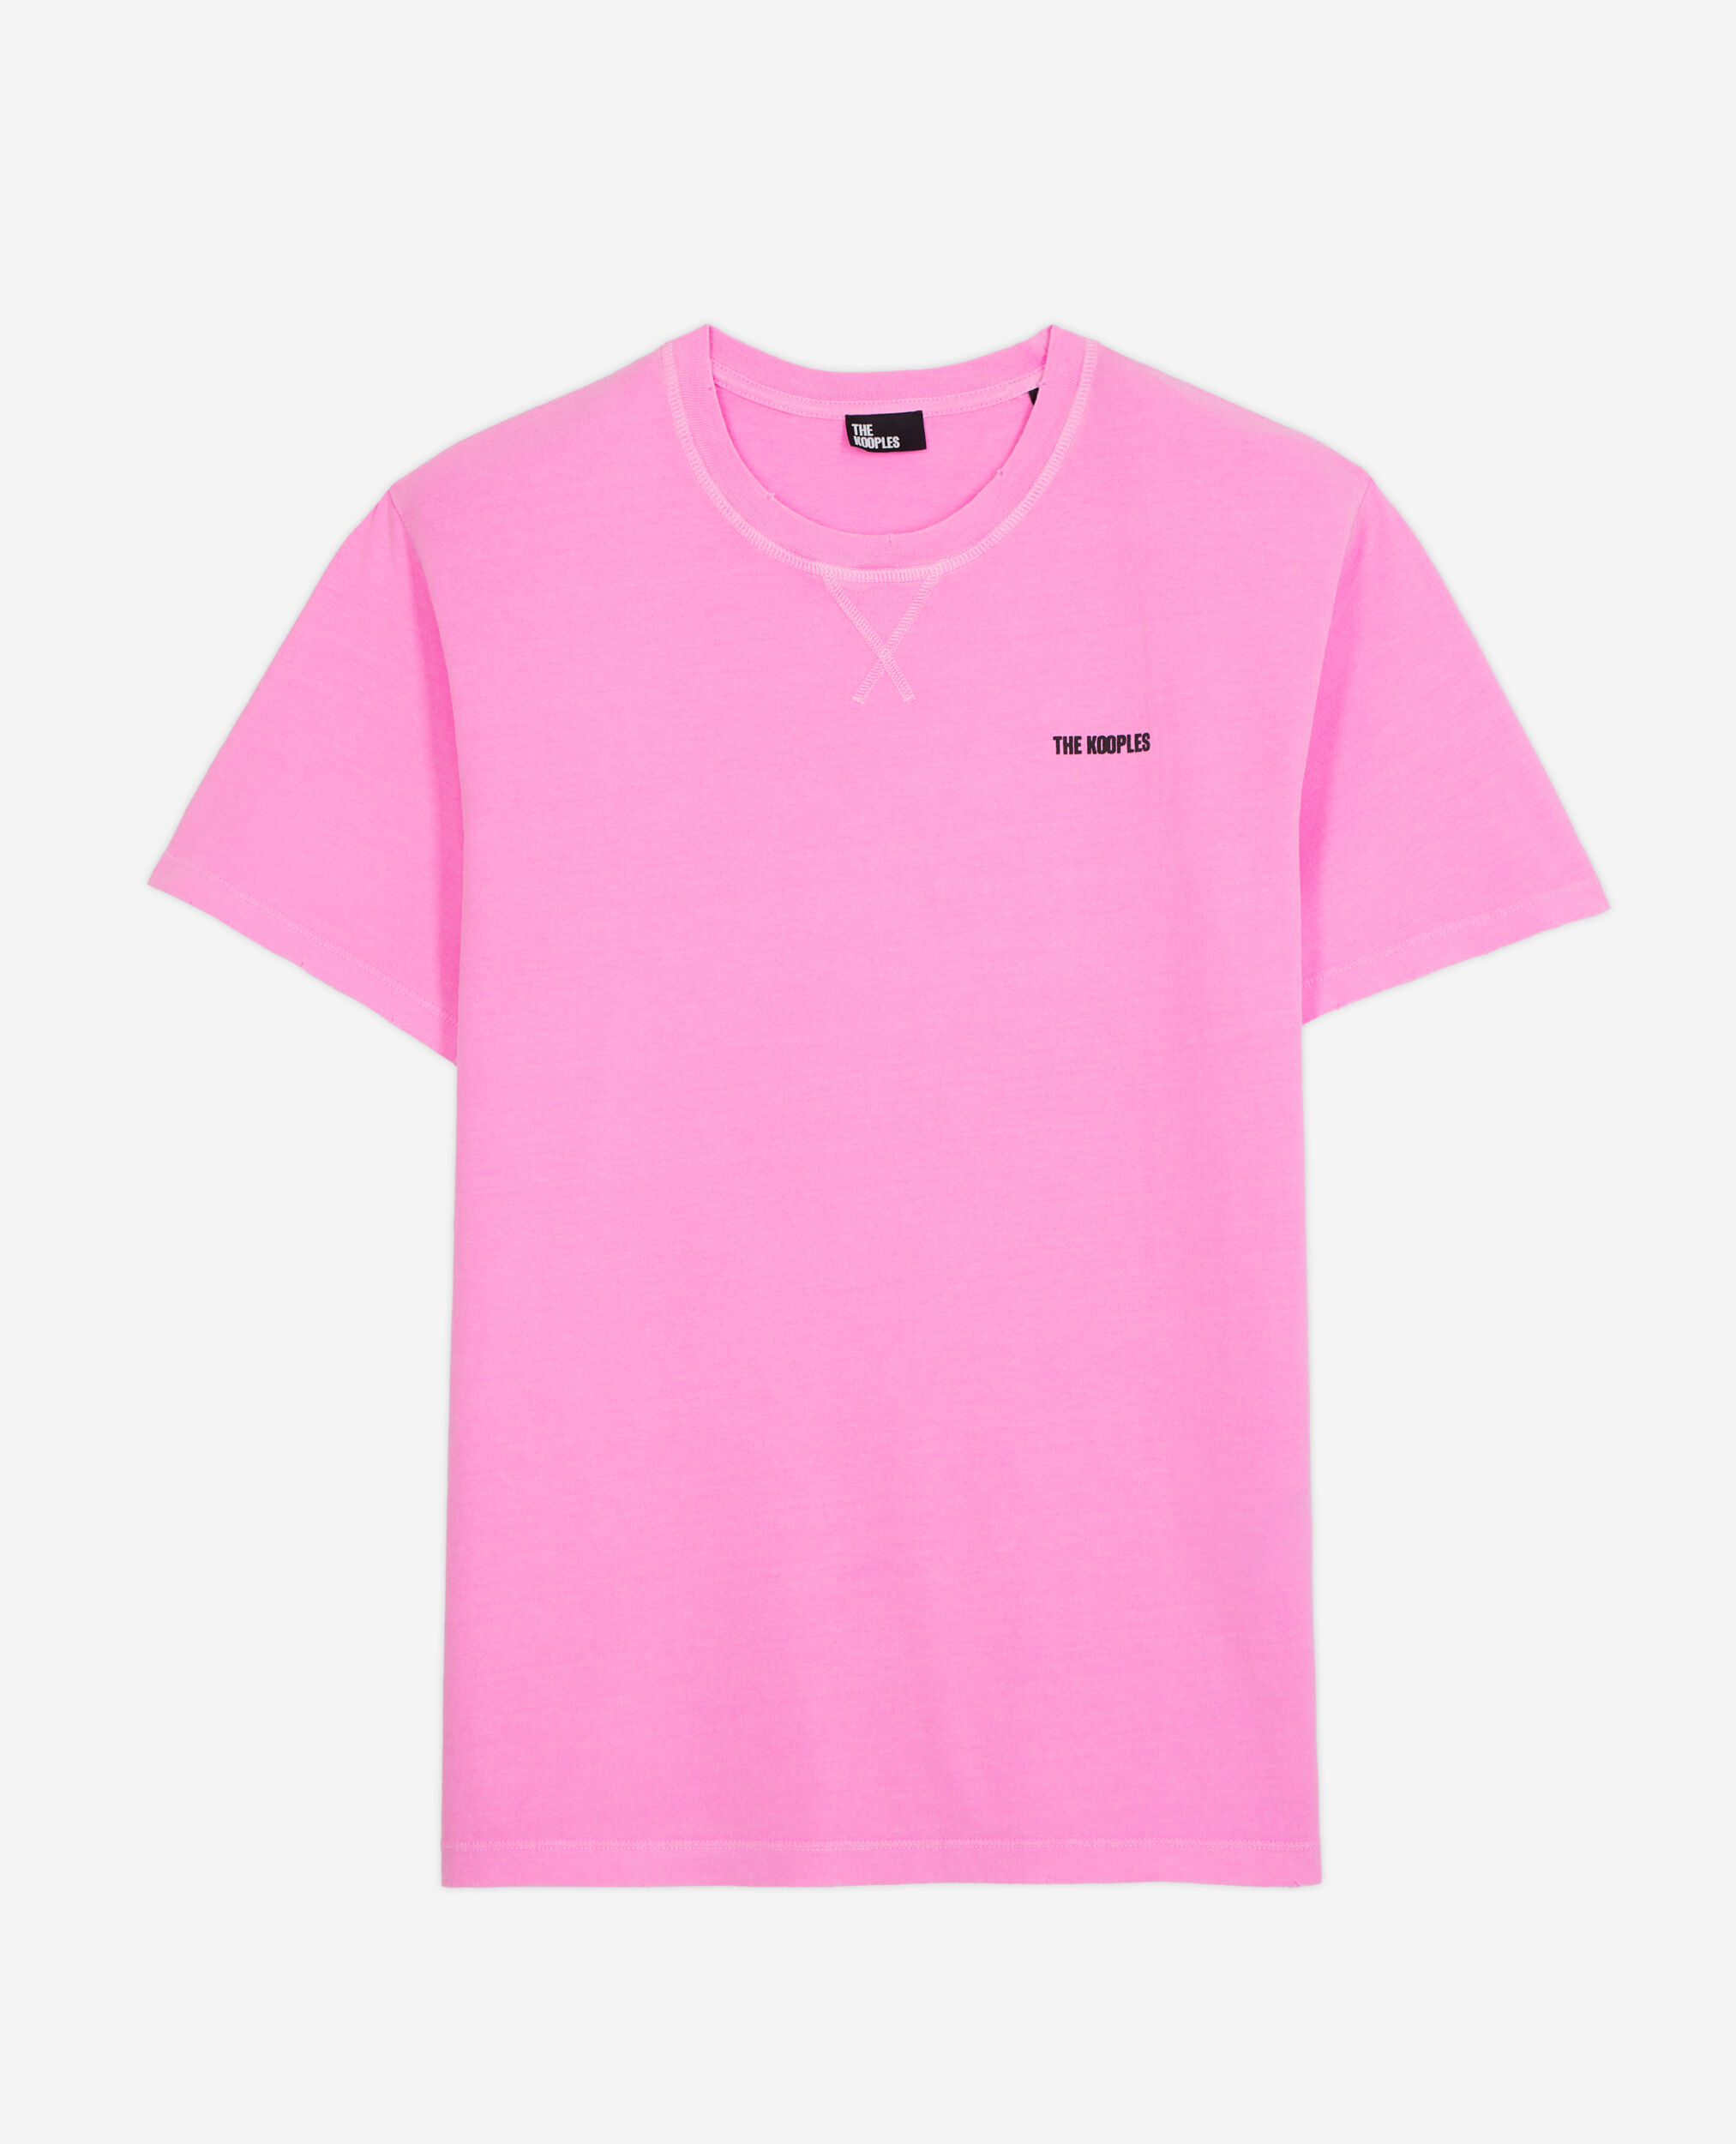 T-shirt Homme rose fluo avec logo, FLUO PINK, hi-res image number null